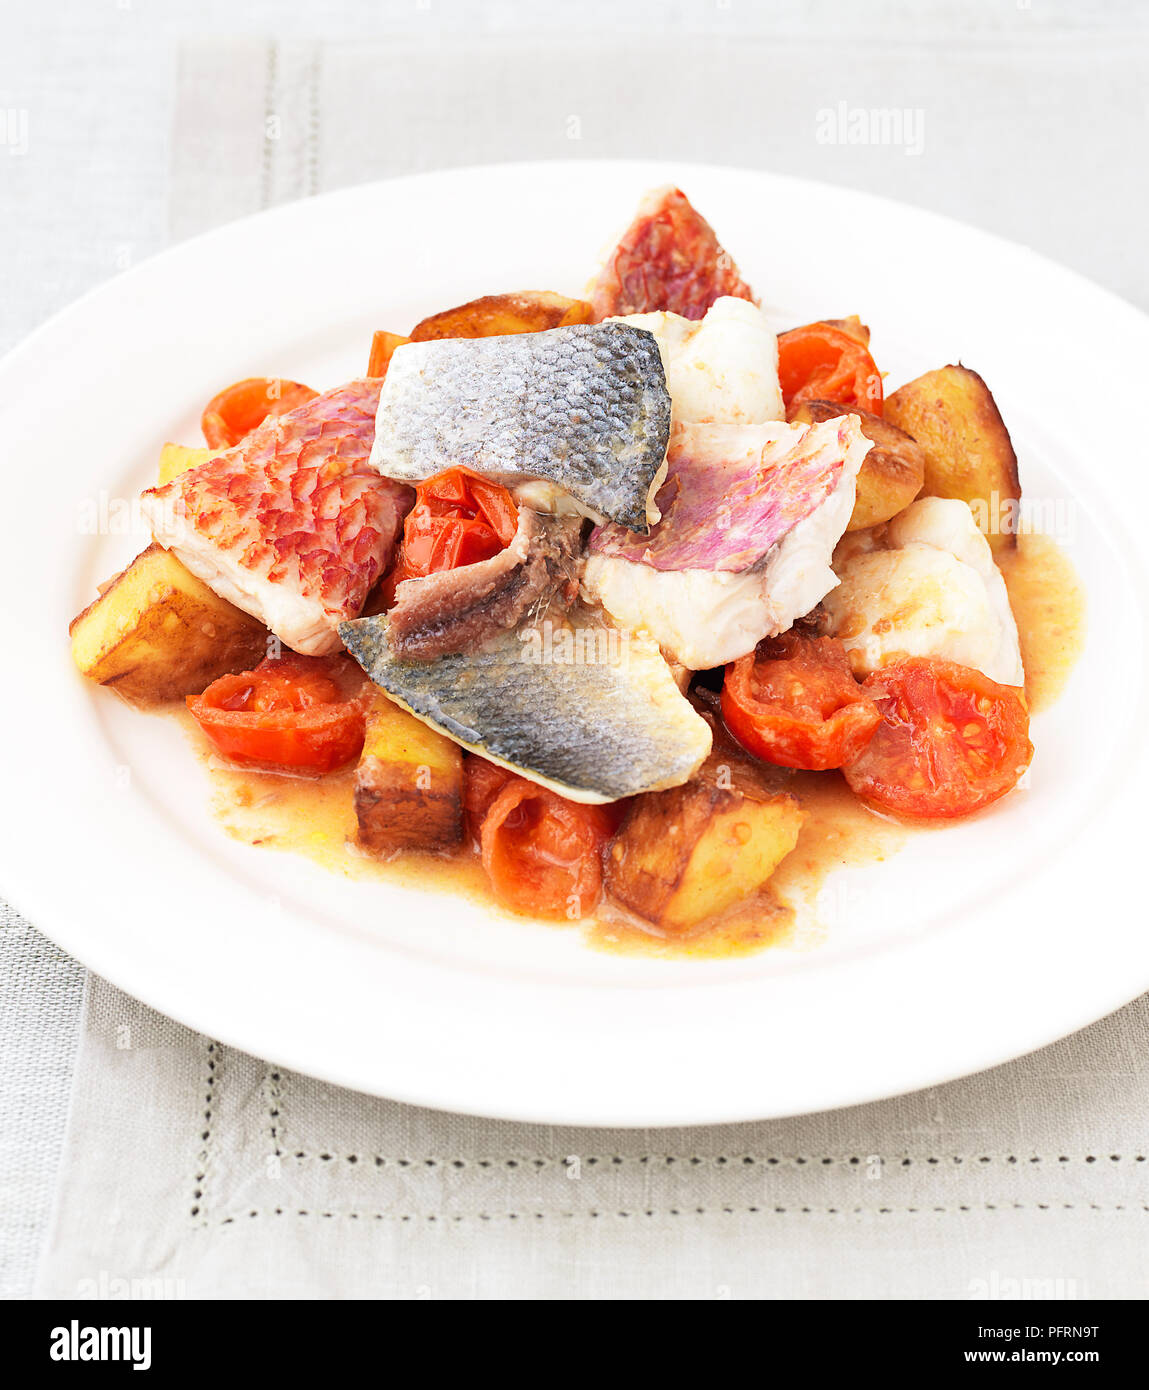 Brocken der Fisch mit Tomaten, Kartoffeln und Zwiebeln auf weiße Platte serviert auf Tischdecke, close-up Stockfoto